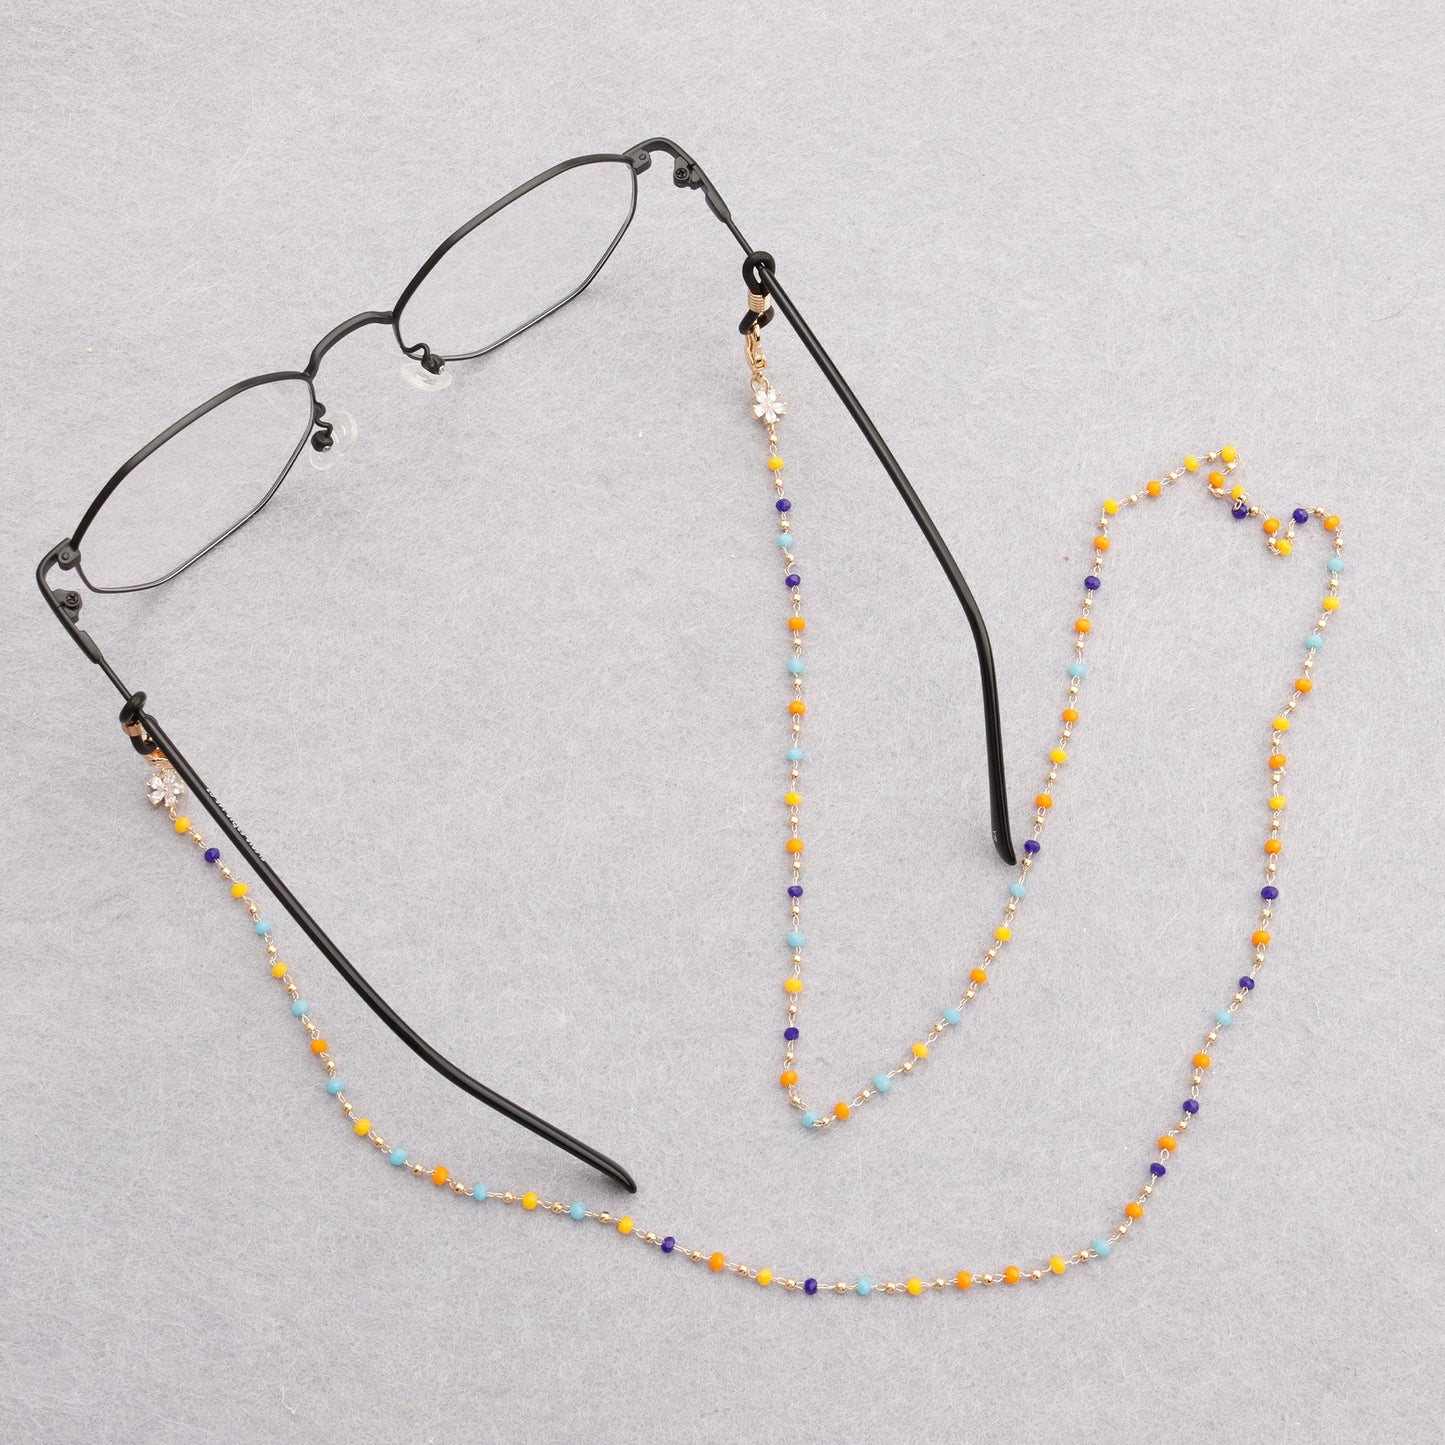 GUFEATHER M837, chaîne de sangle de lunettes, accessoires de bijoux, pass REACH, sans nickel, plaqué or 18 carats, chaîne de perles, chaîne de masque, 74.5 cm/pièces 